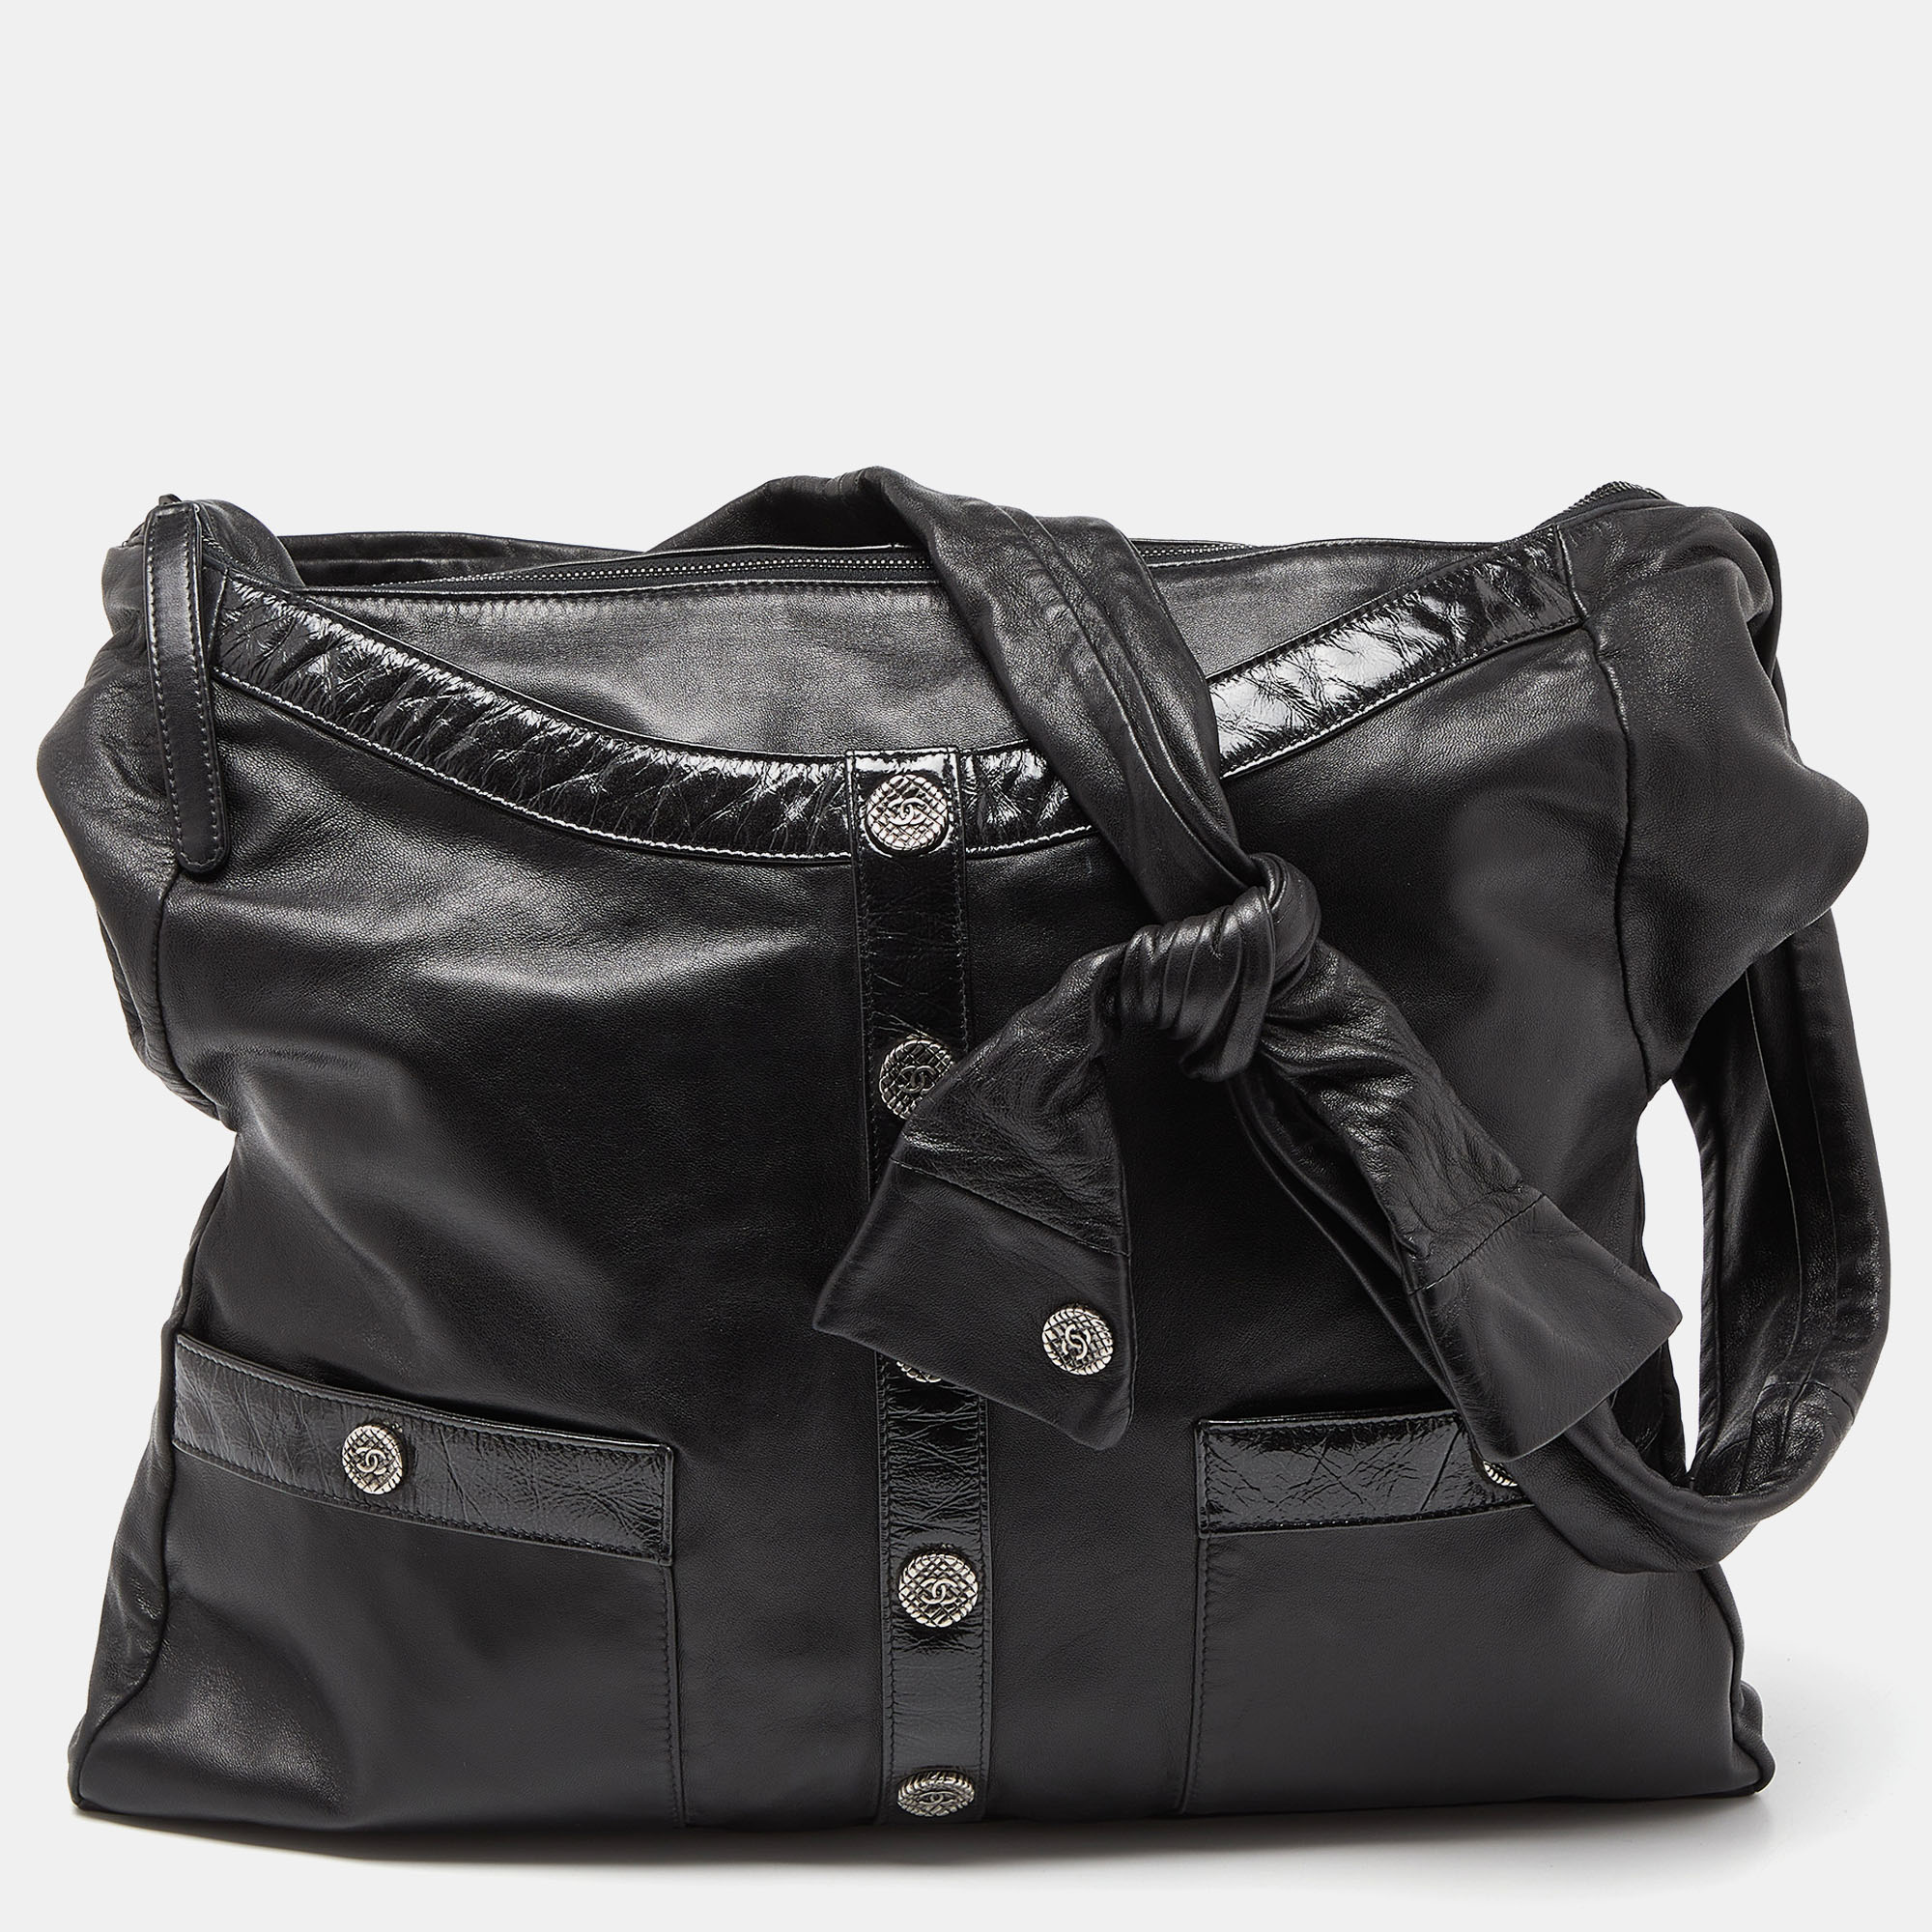 Chanel black leather large girl chanel bag